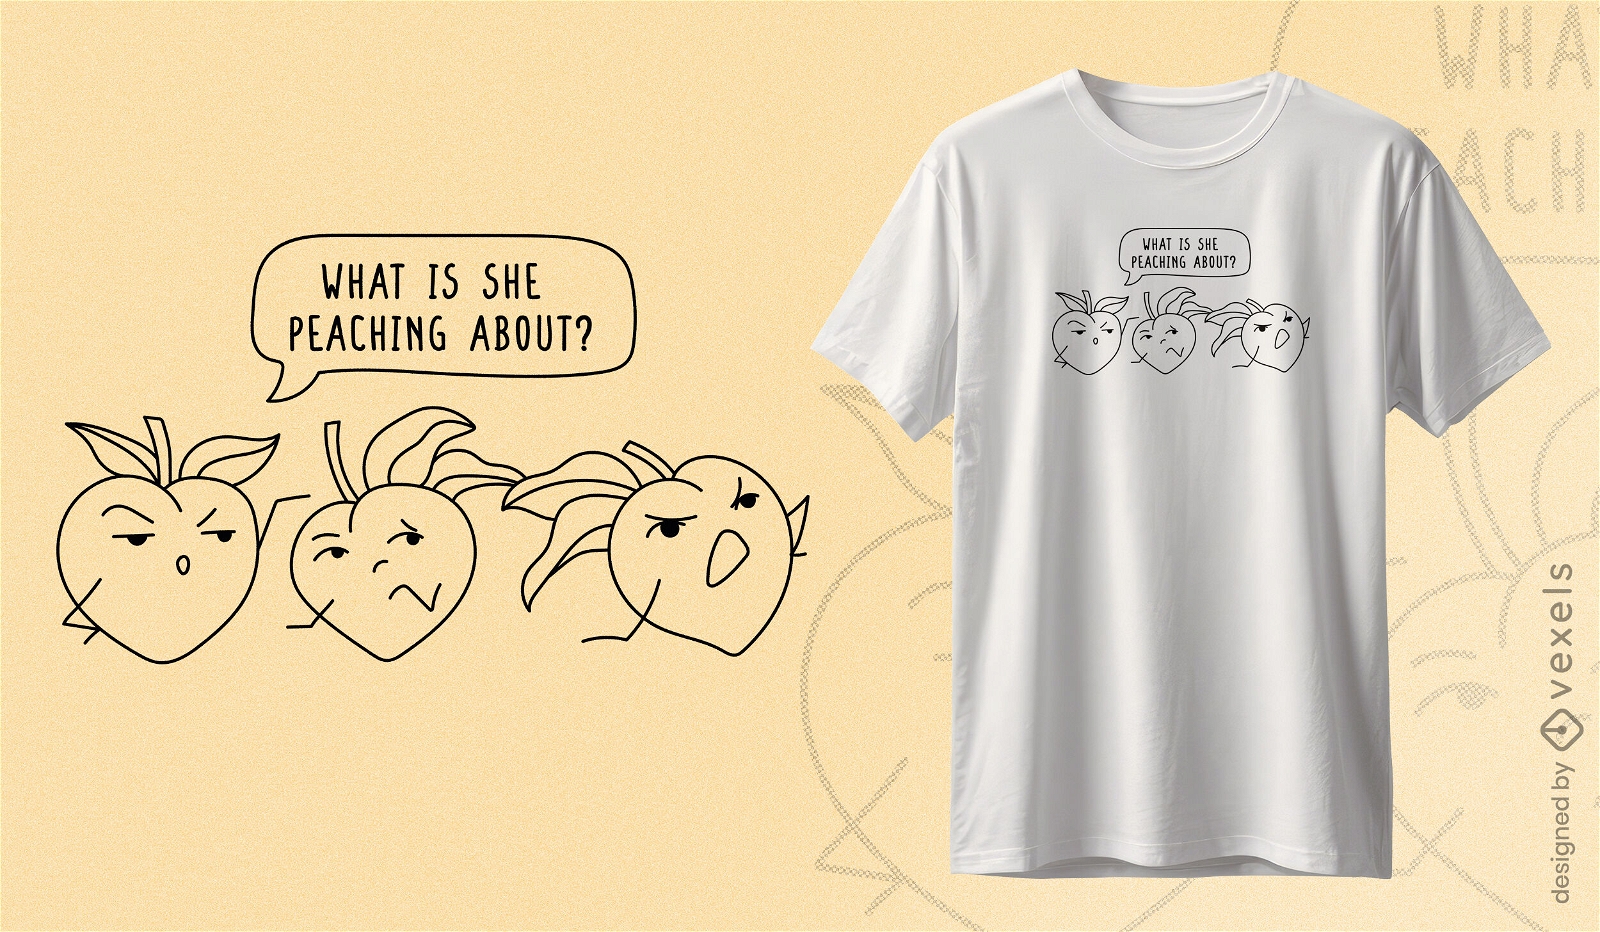 Pfirsich-Wortspiel-Humor-T-Shirt-Design